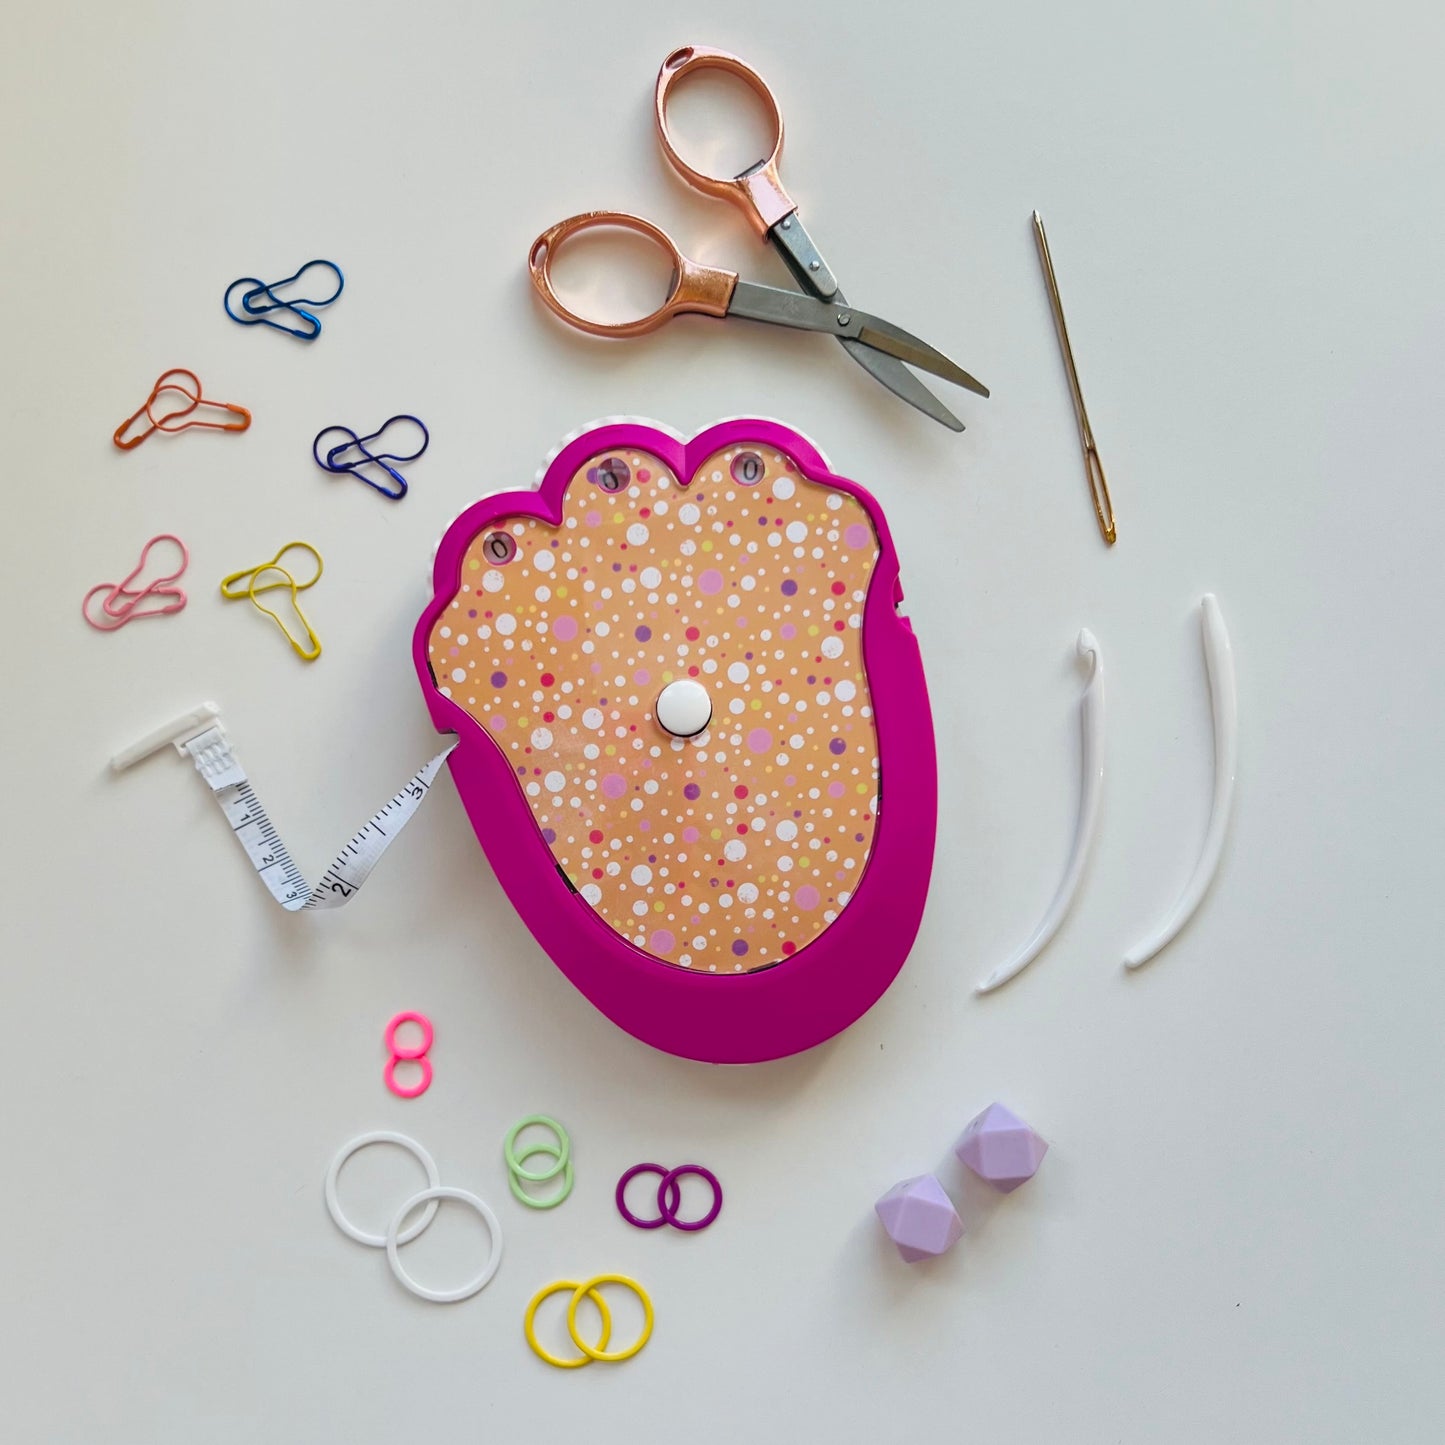 The Knit & Crochet Kit - Knitting & Crochet Tool Kit - Pixie Dust Polka Dot - Assorted Colors